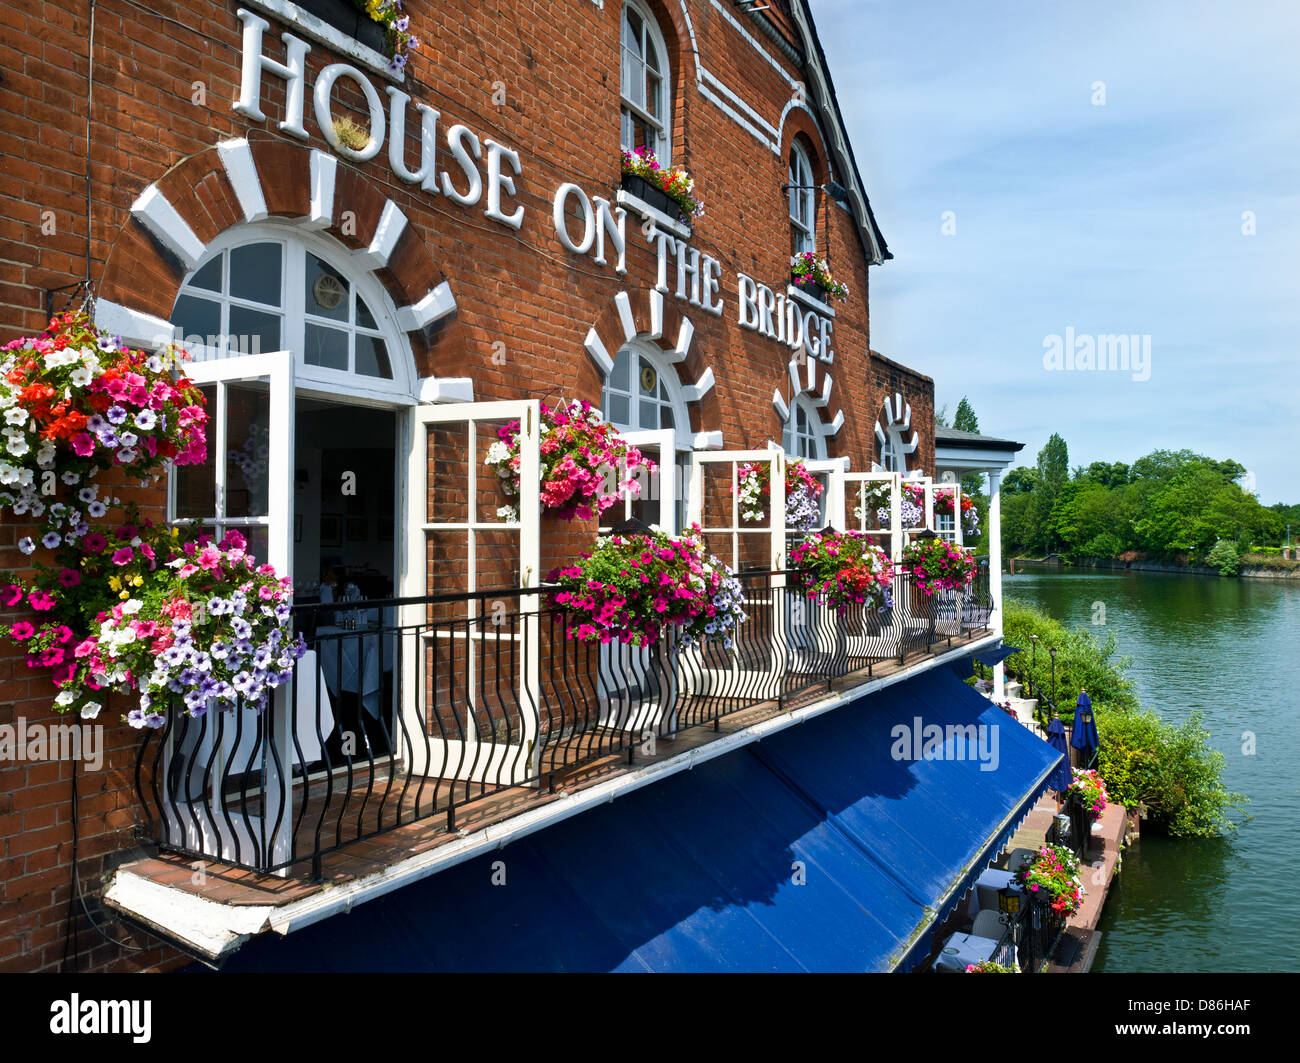 Maison sur le pont Restaurant avec des paniers de fleurs de printemps à partir de Windsor Bridge over River Thames Eton Berkshire,UK Banque D'Images